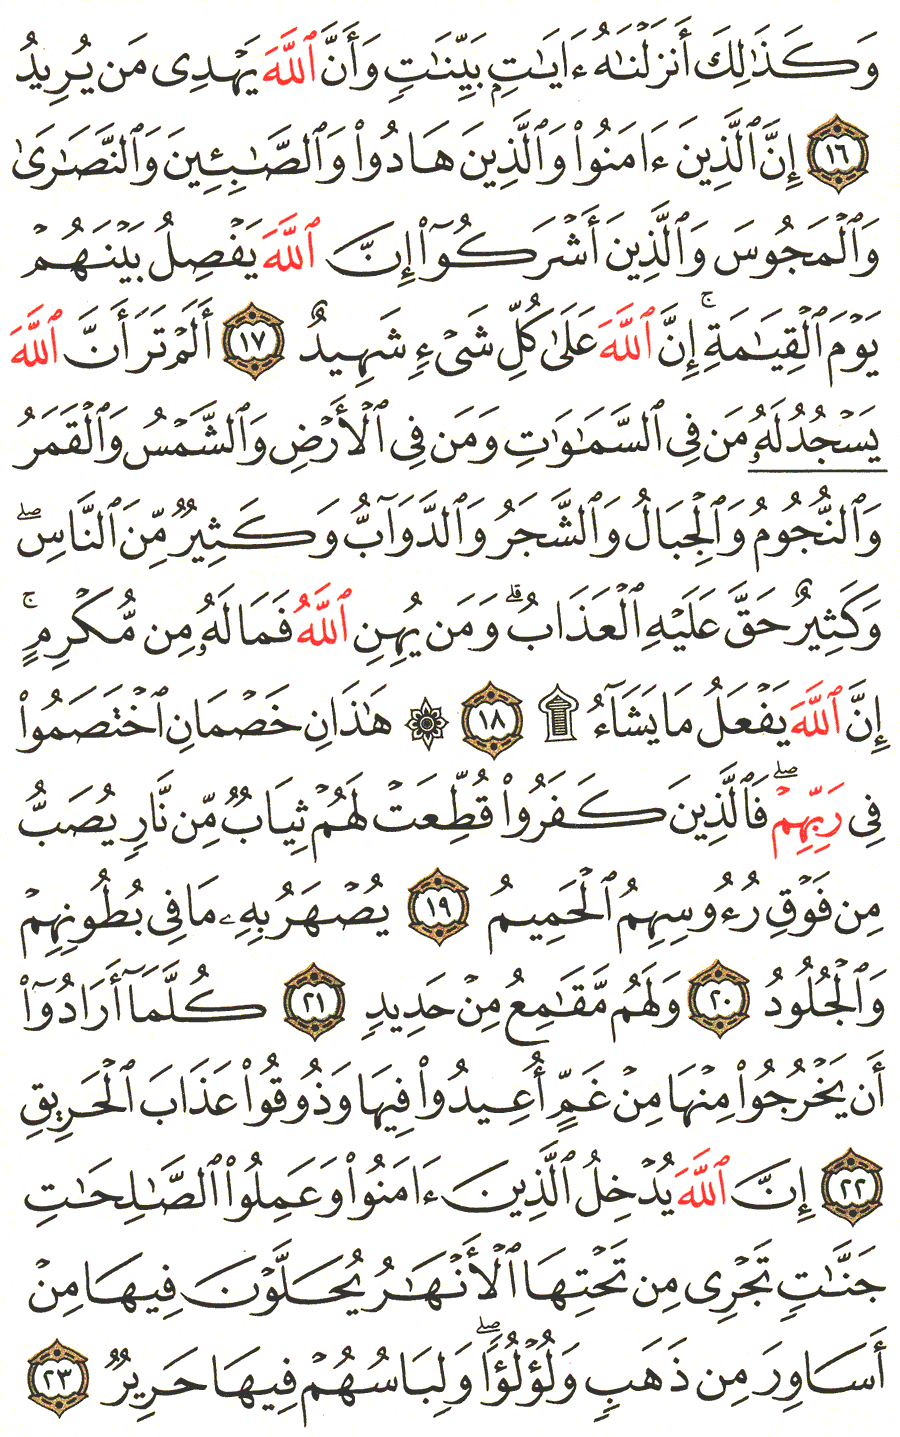 الصفحة 334 من القرآن الكريم